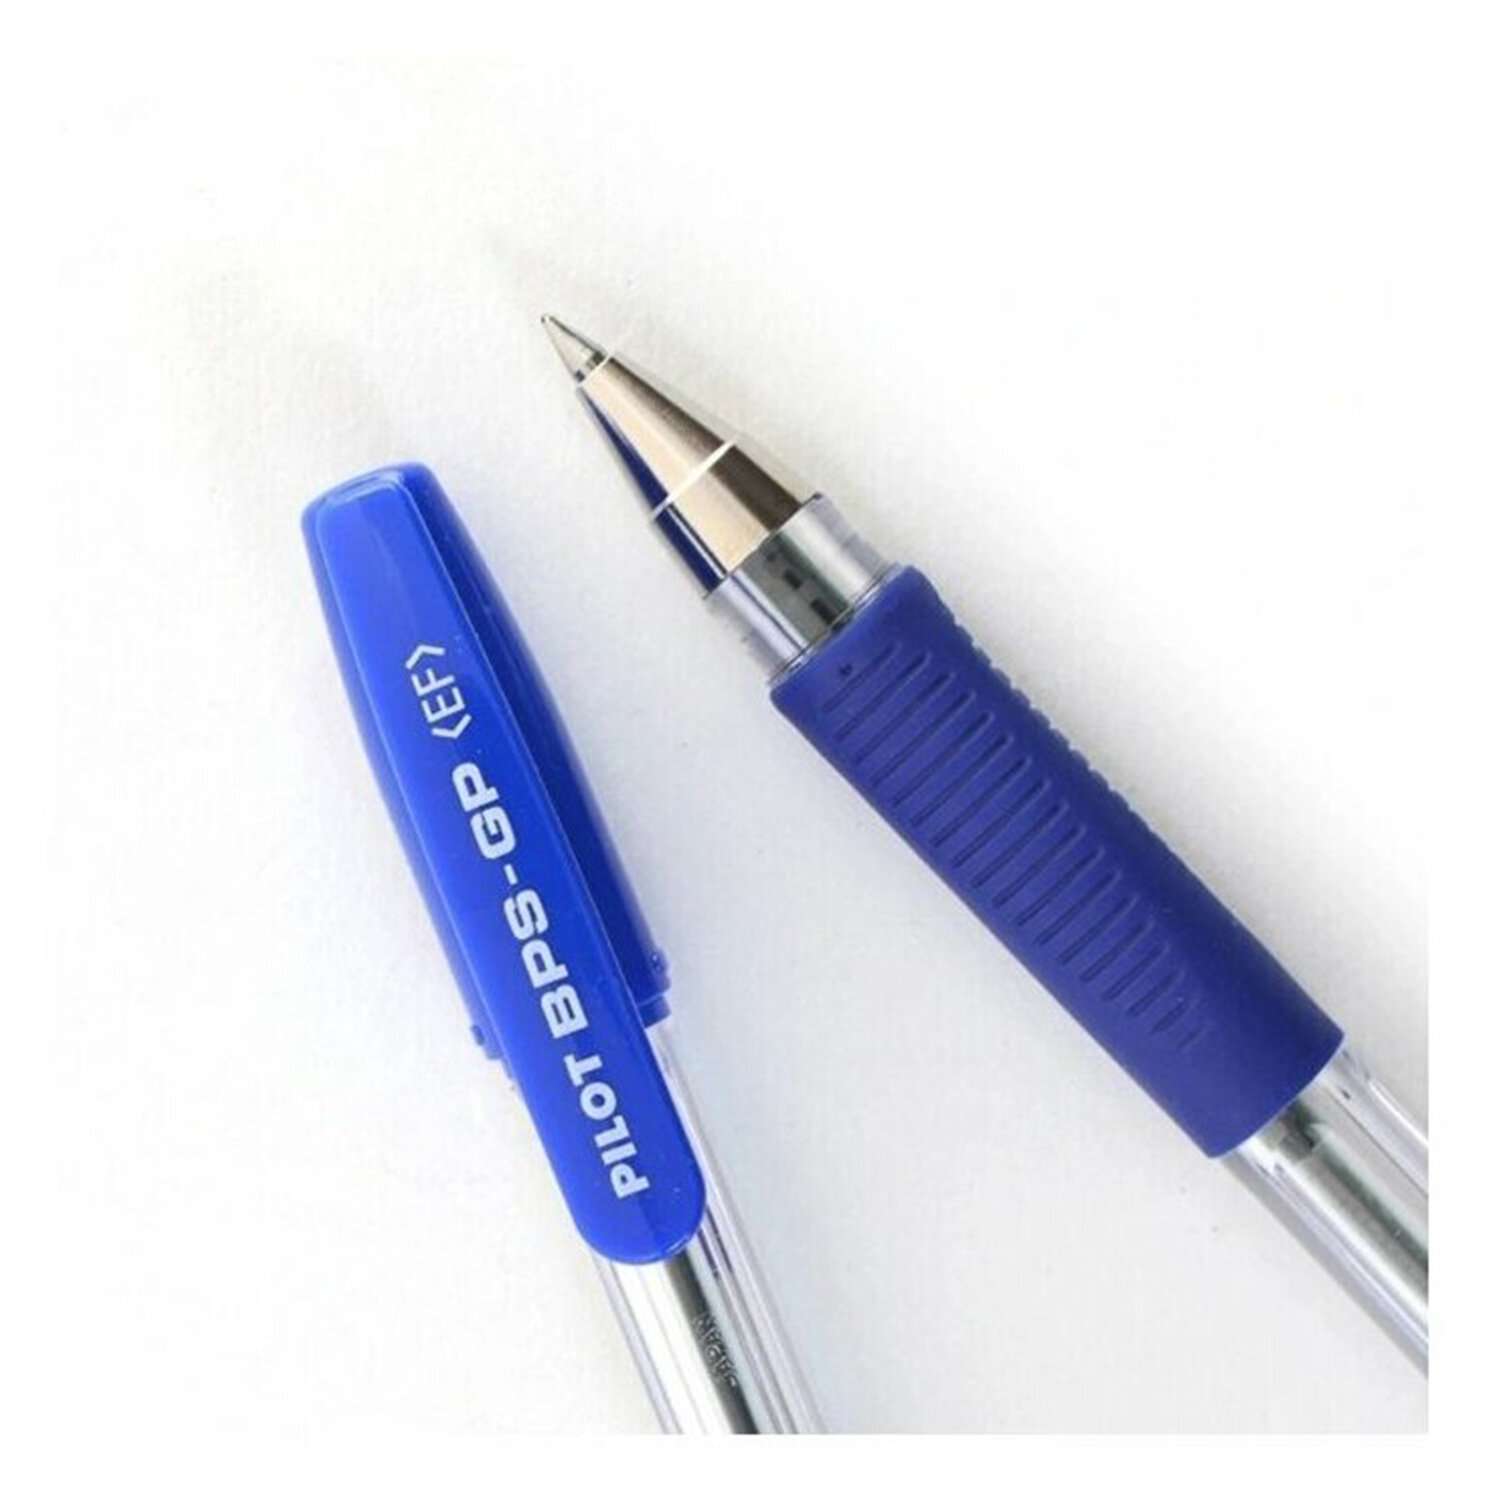 Ручки шариковые PILOT масляные синие набор 3 штуки - фото 10